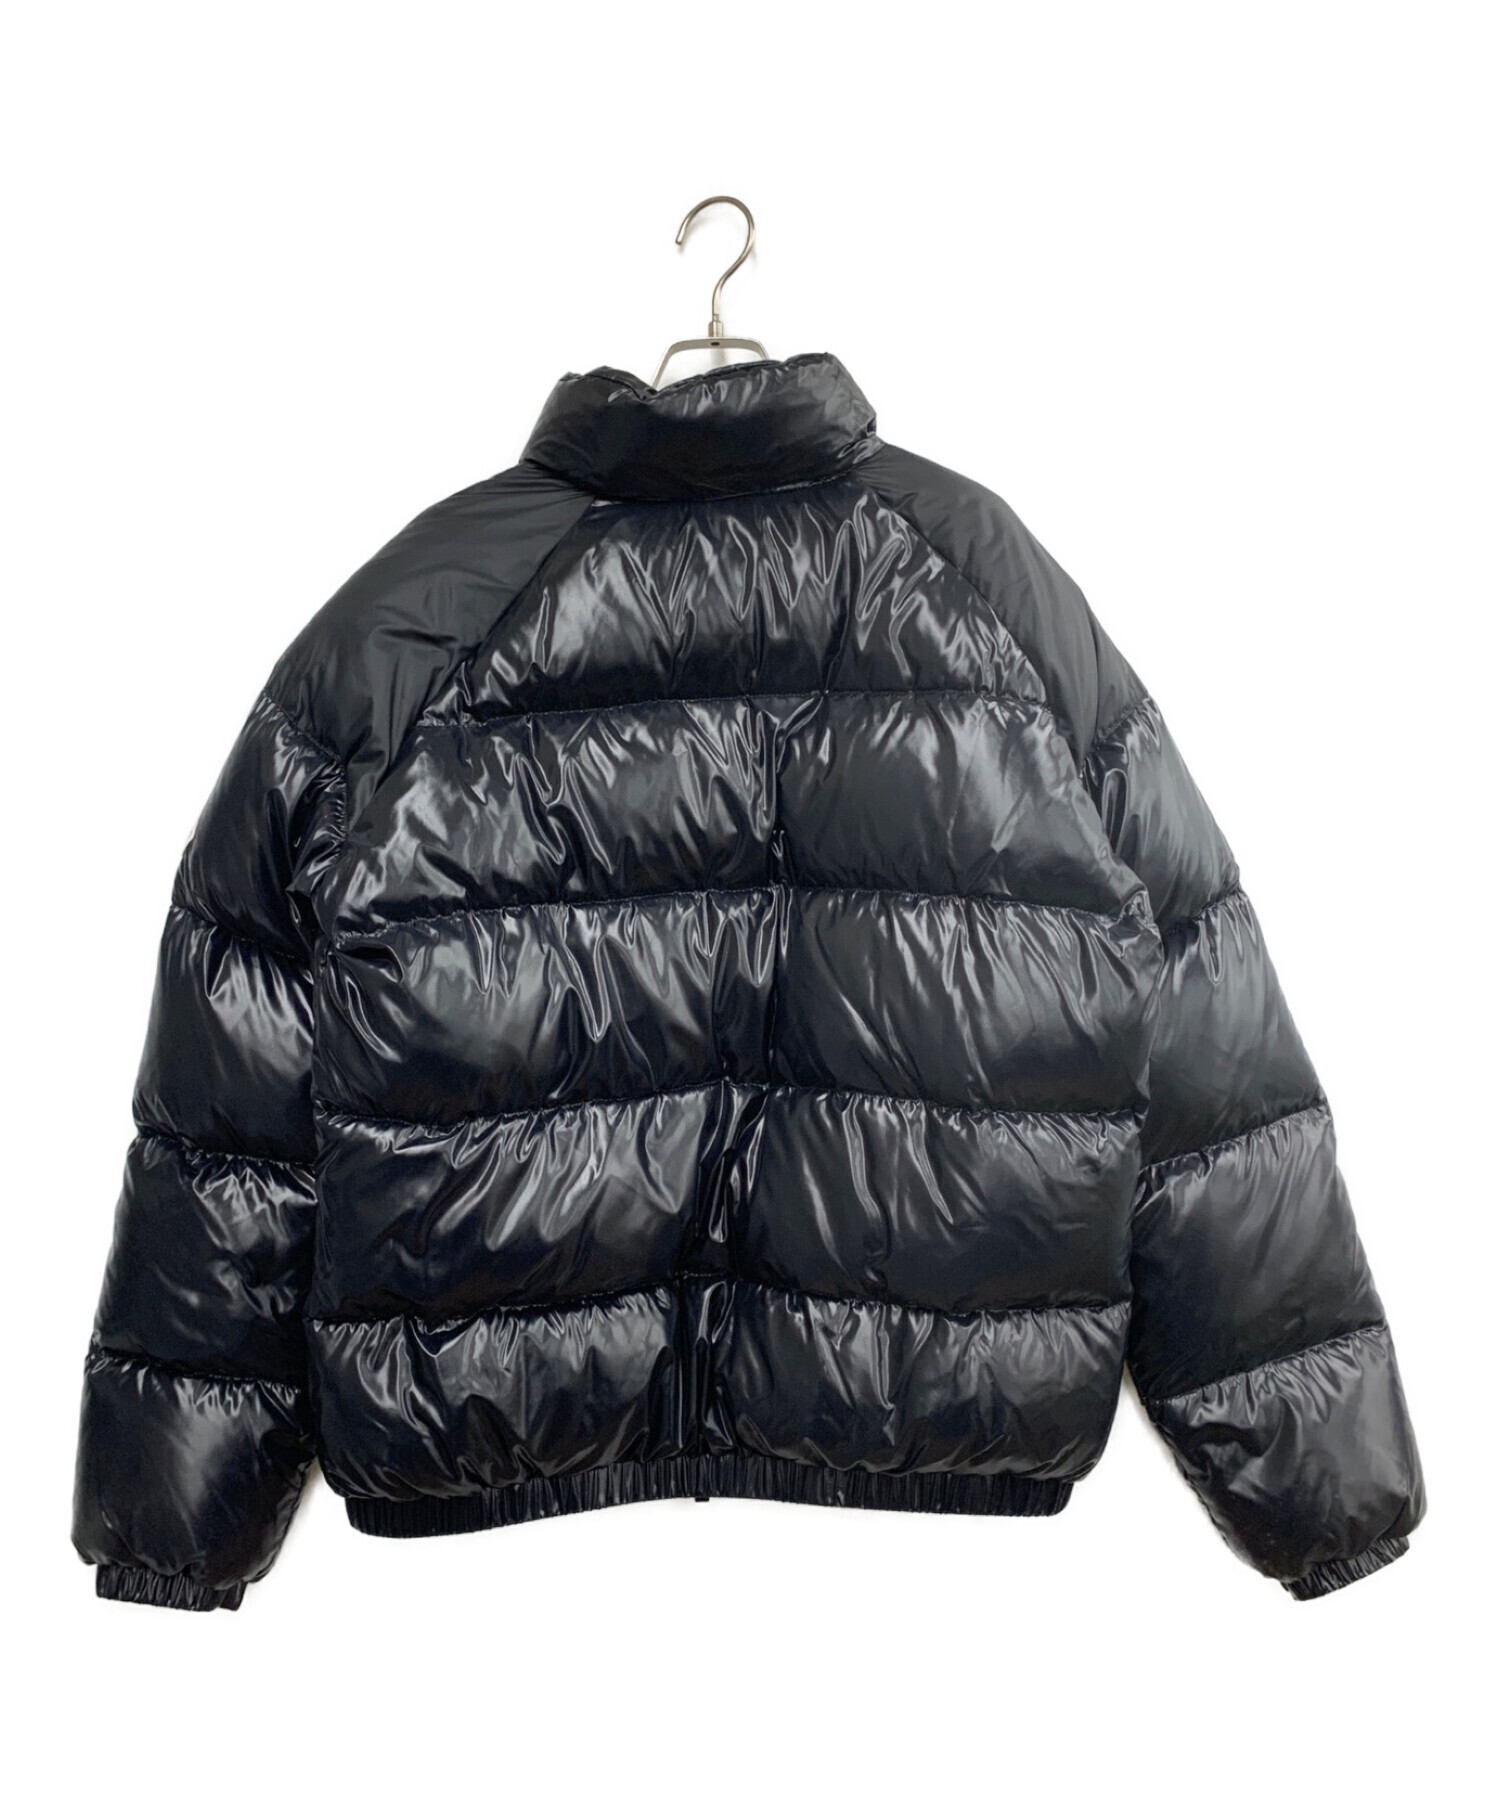 Pyrenex (ピレネックス) ダウンジャケット ブラック サイズ:L